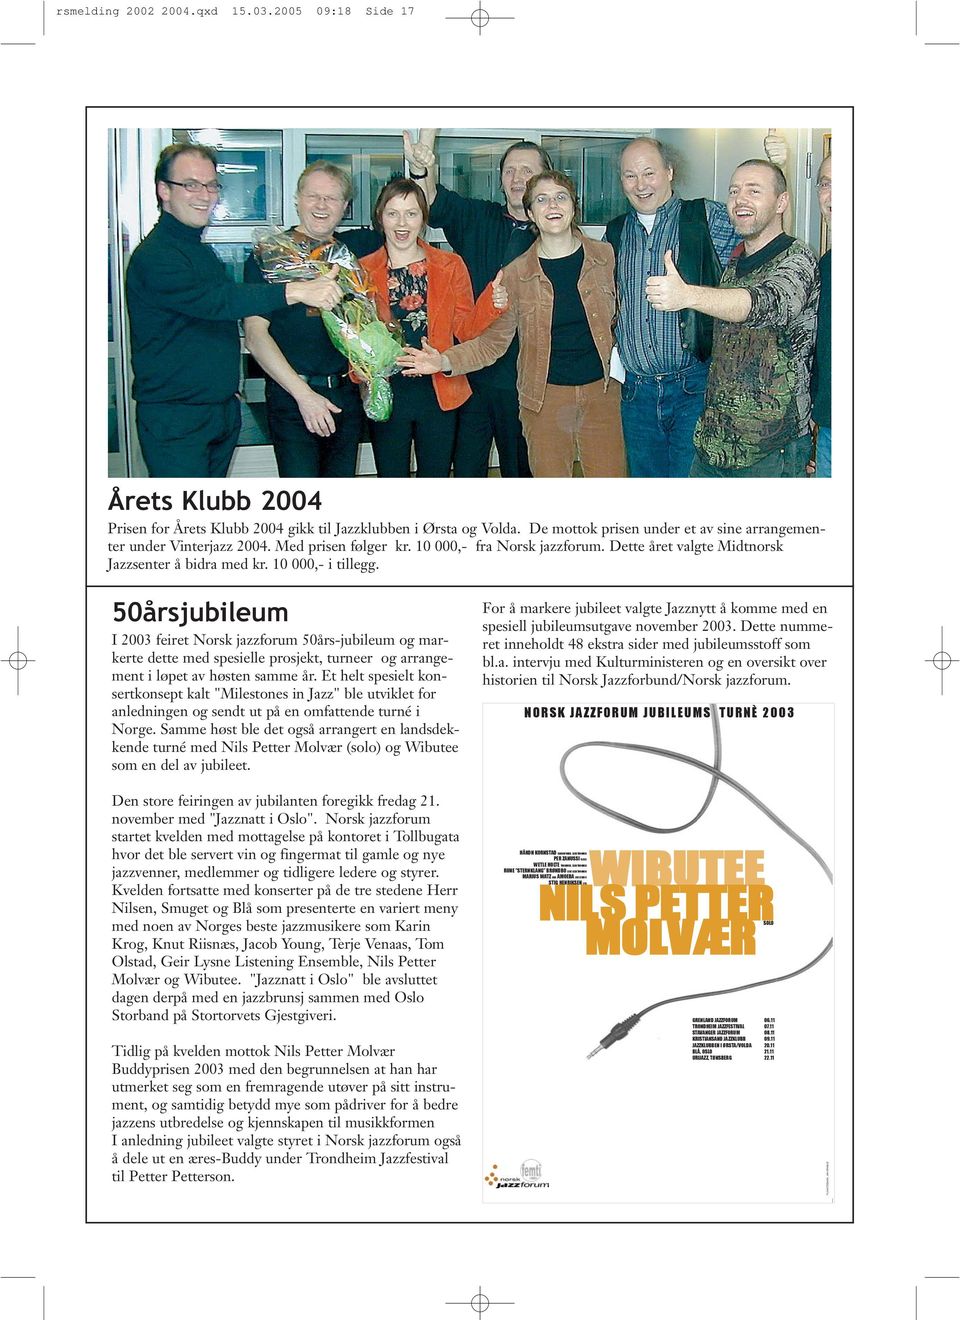 50årsjubileum I 2003 feiret Norsk jazzforum 50års-jubileum og markerte dette med spesielle prosjekt, turneer og arrangement i løpet av høsten samme år.